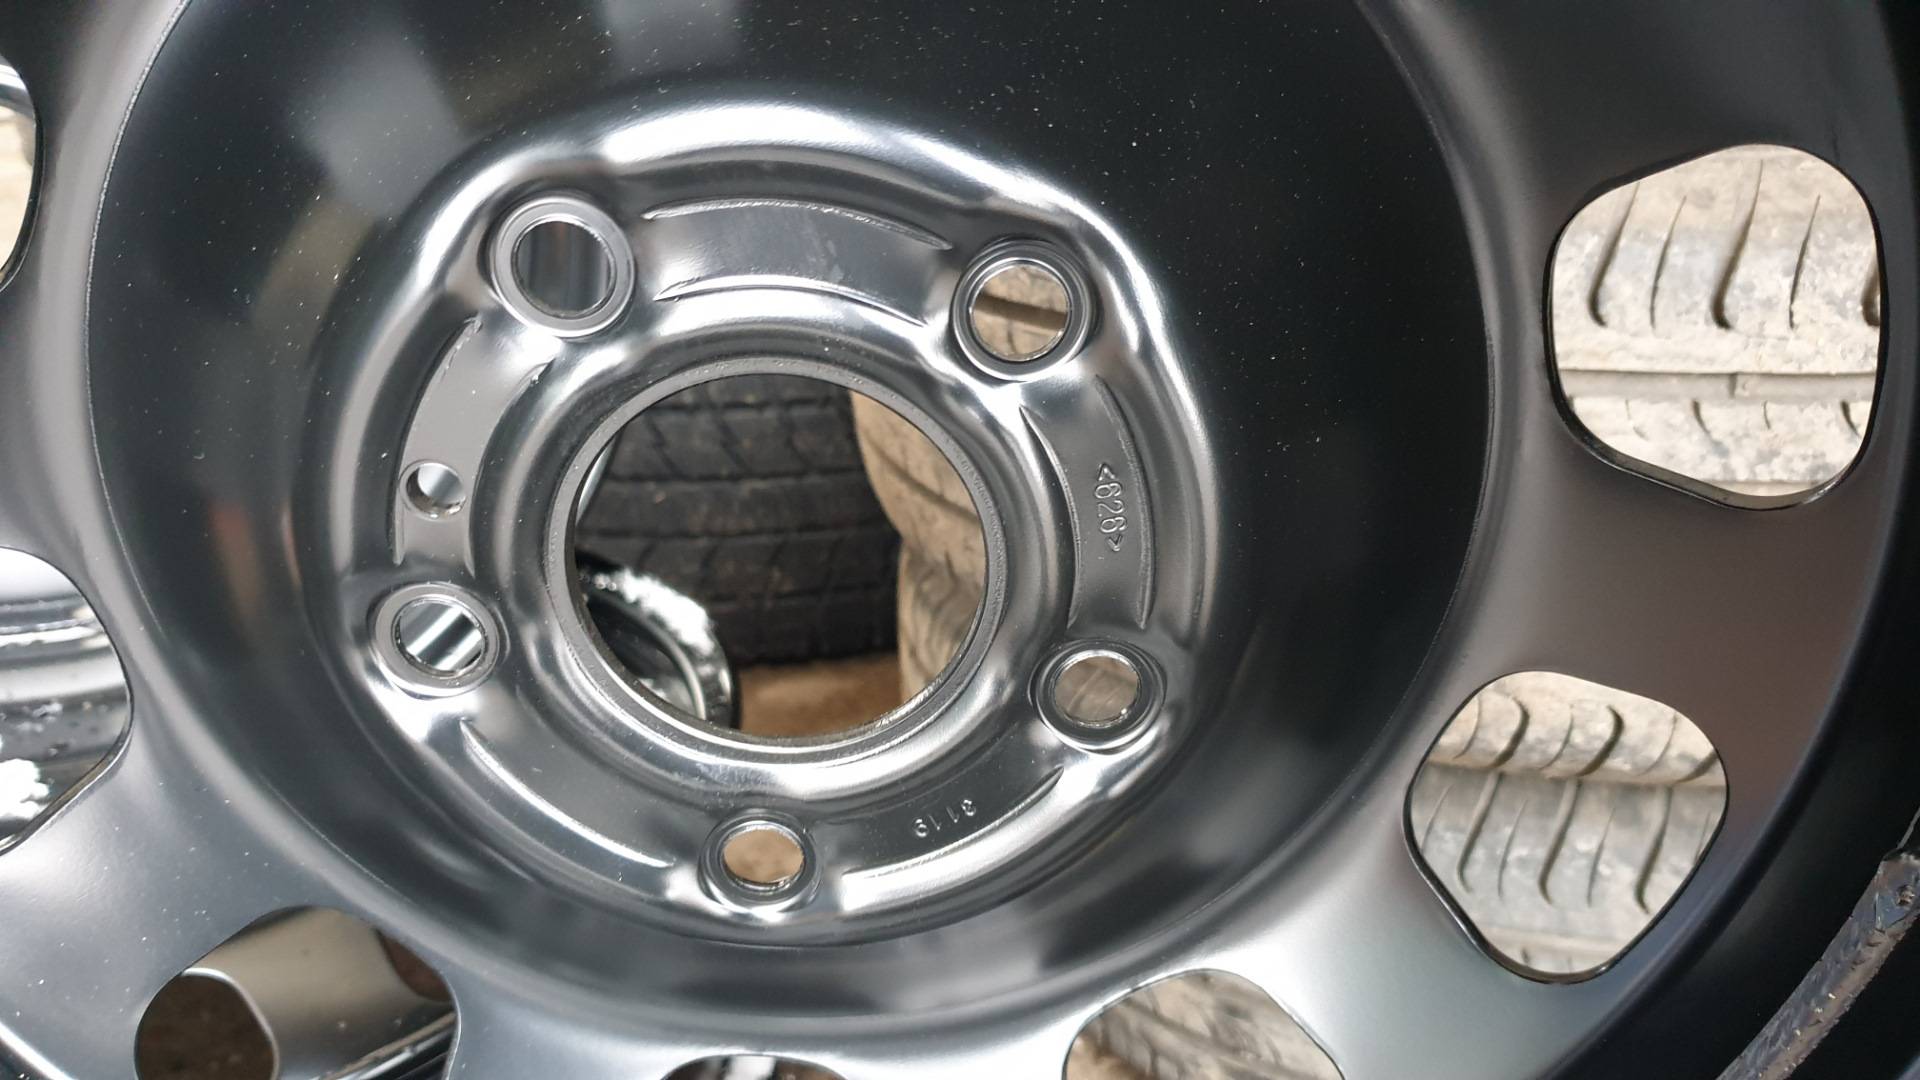 Renault kaptur 2019: размер дисков и колёс, разболтовка, давление в шинах, вылет диска, dia, pcd, сверловка, штатная резина и тюнинг